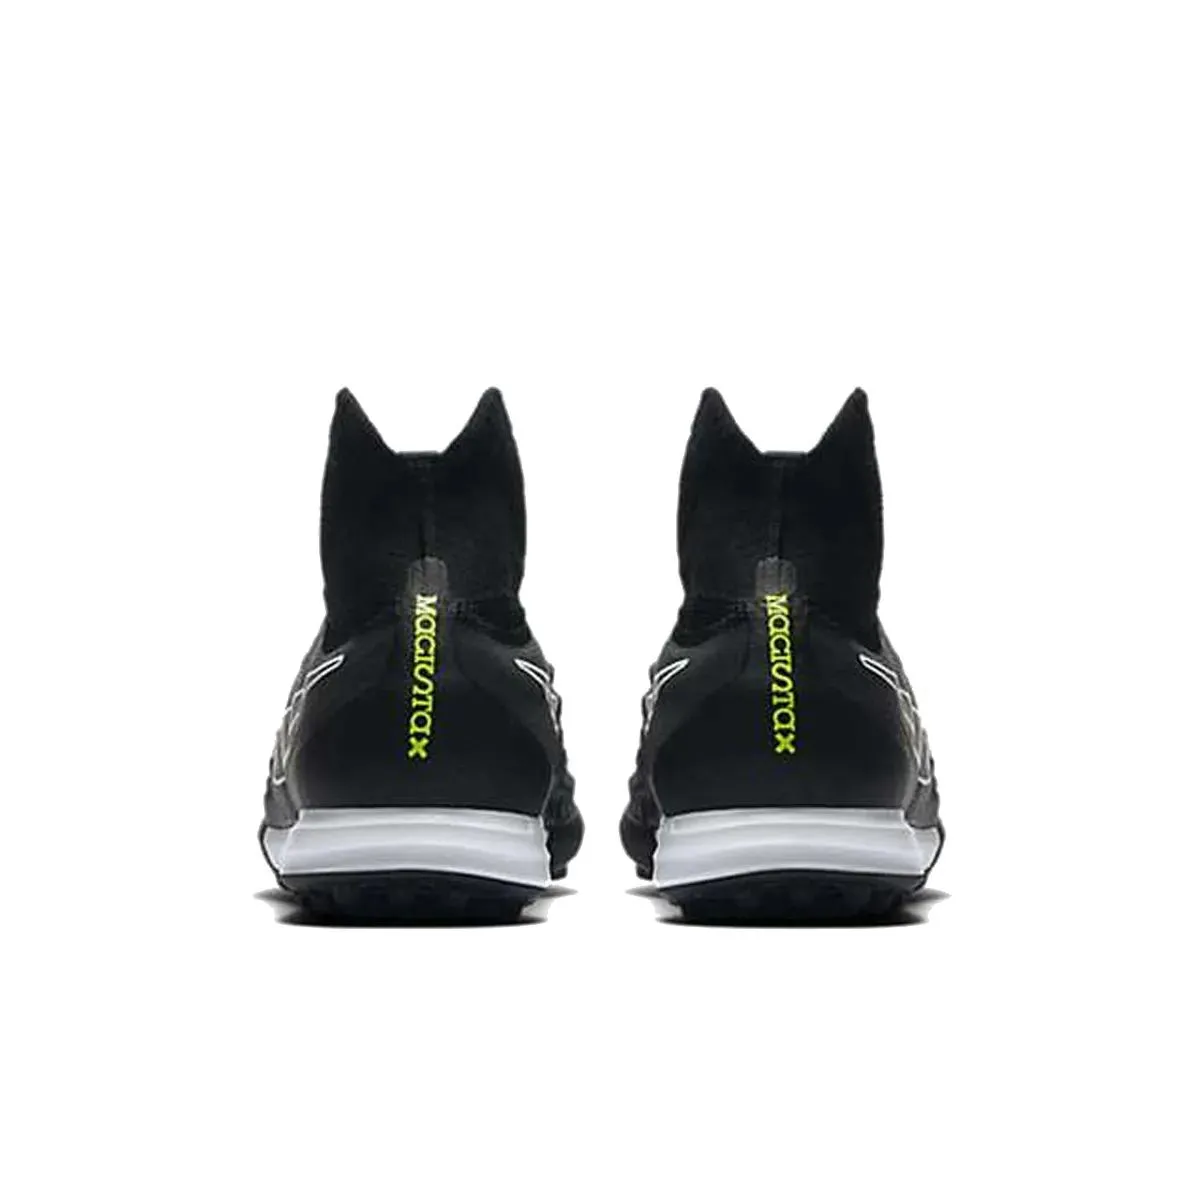 Nike Tenisice MAGISTAX PROXIMO II DF TF 